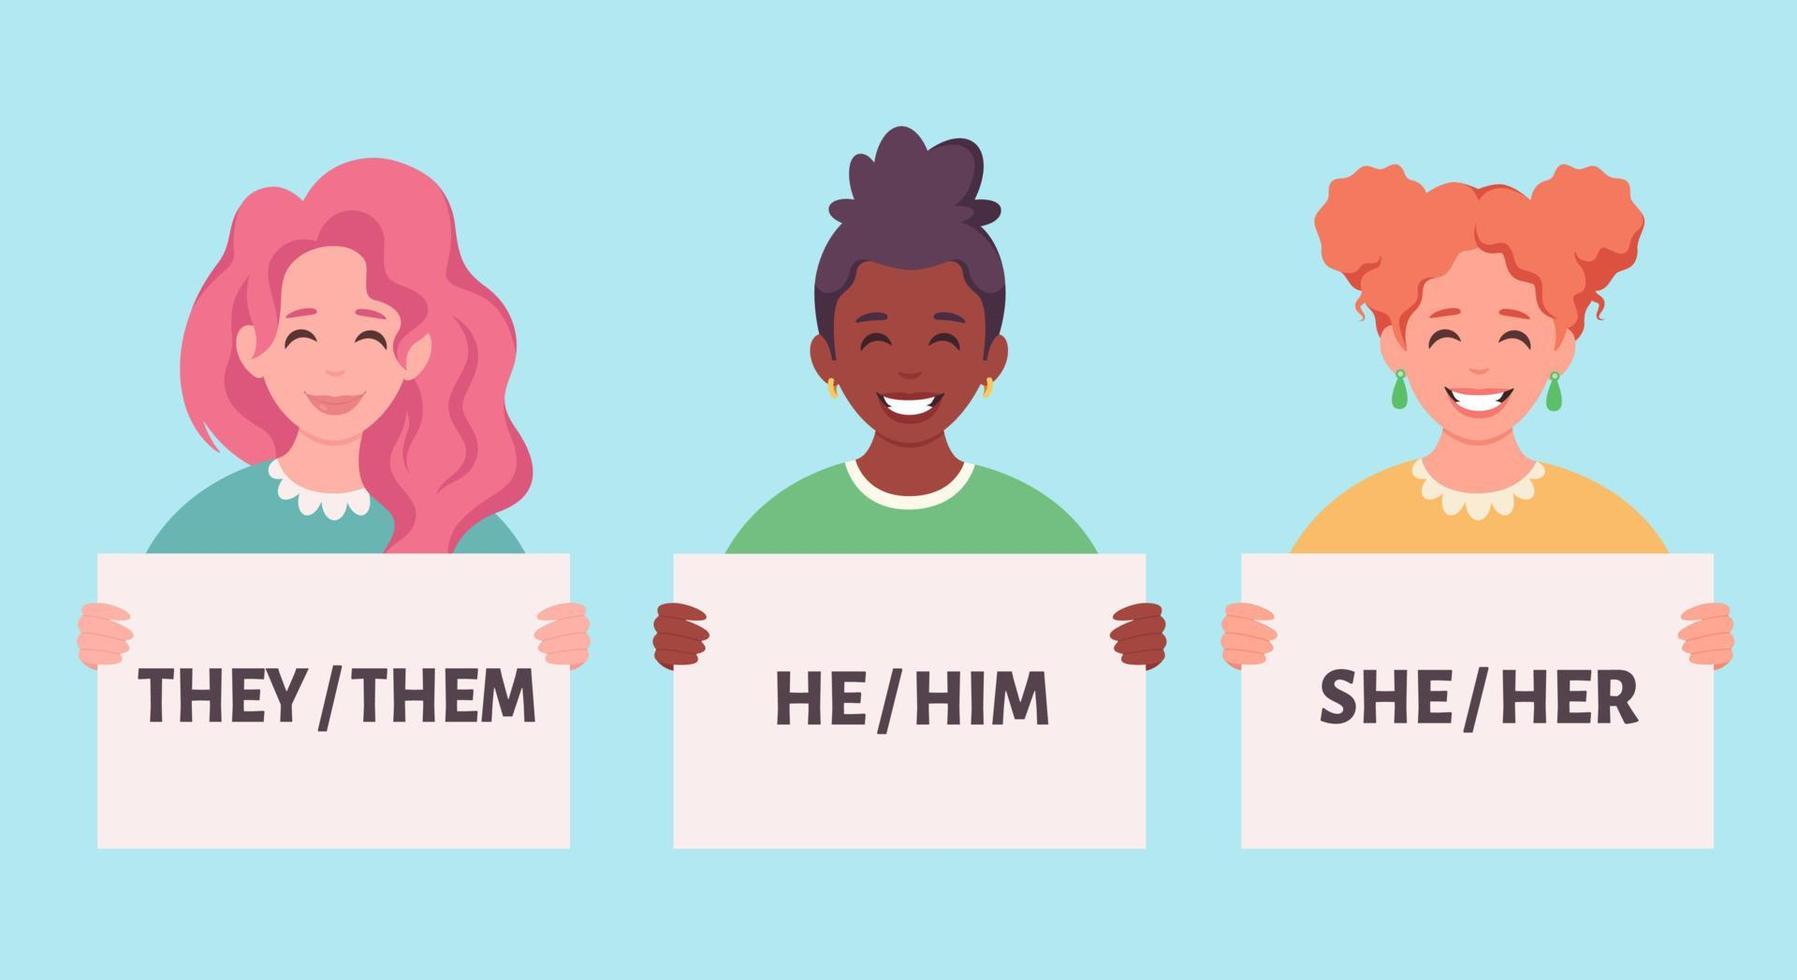 personas con cartel con pronombres de género. ella, él, ellos, no binarios. vector